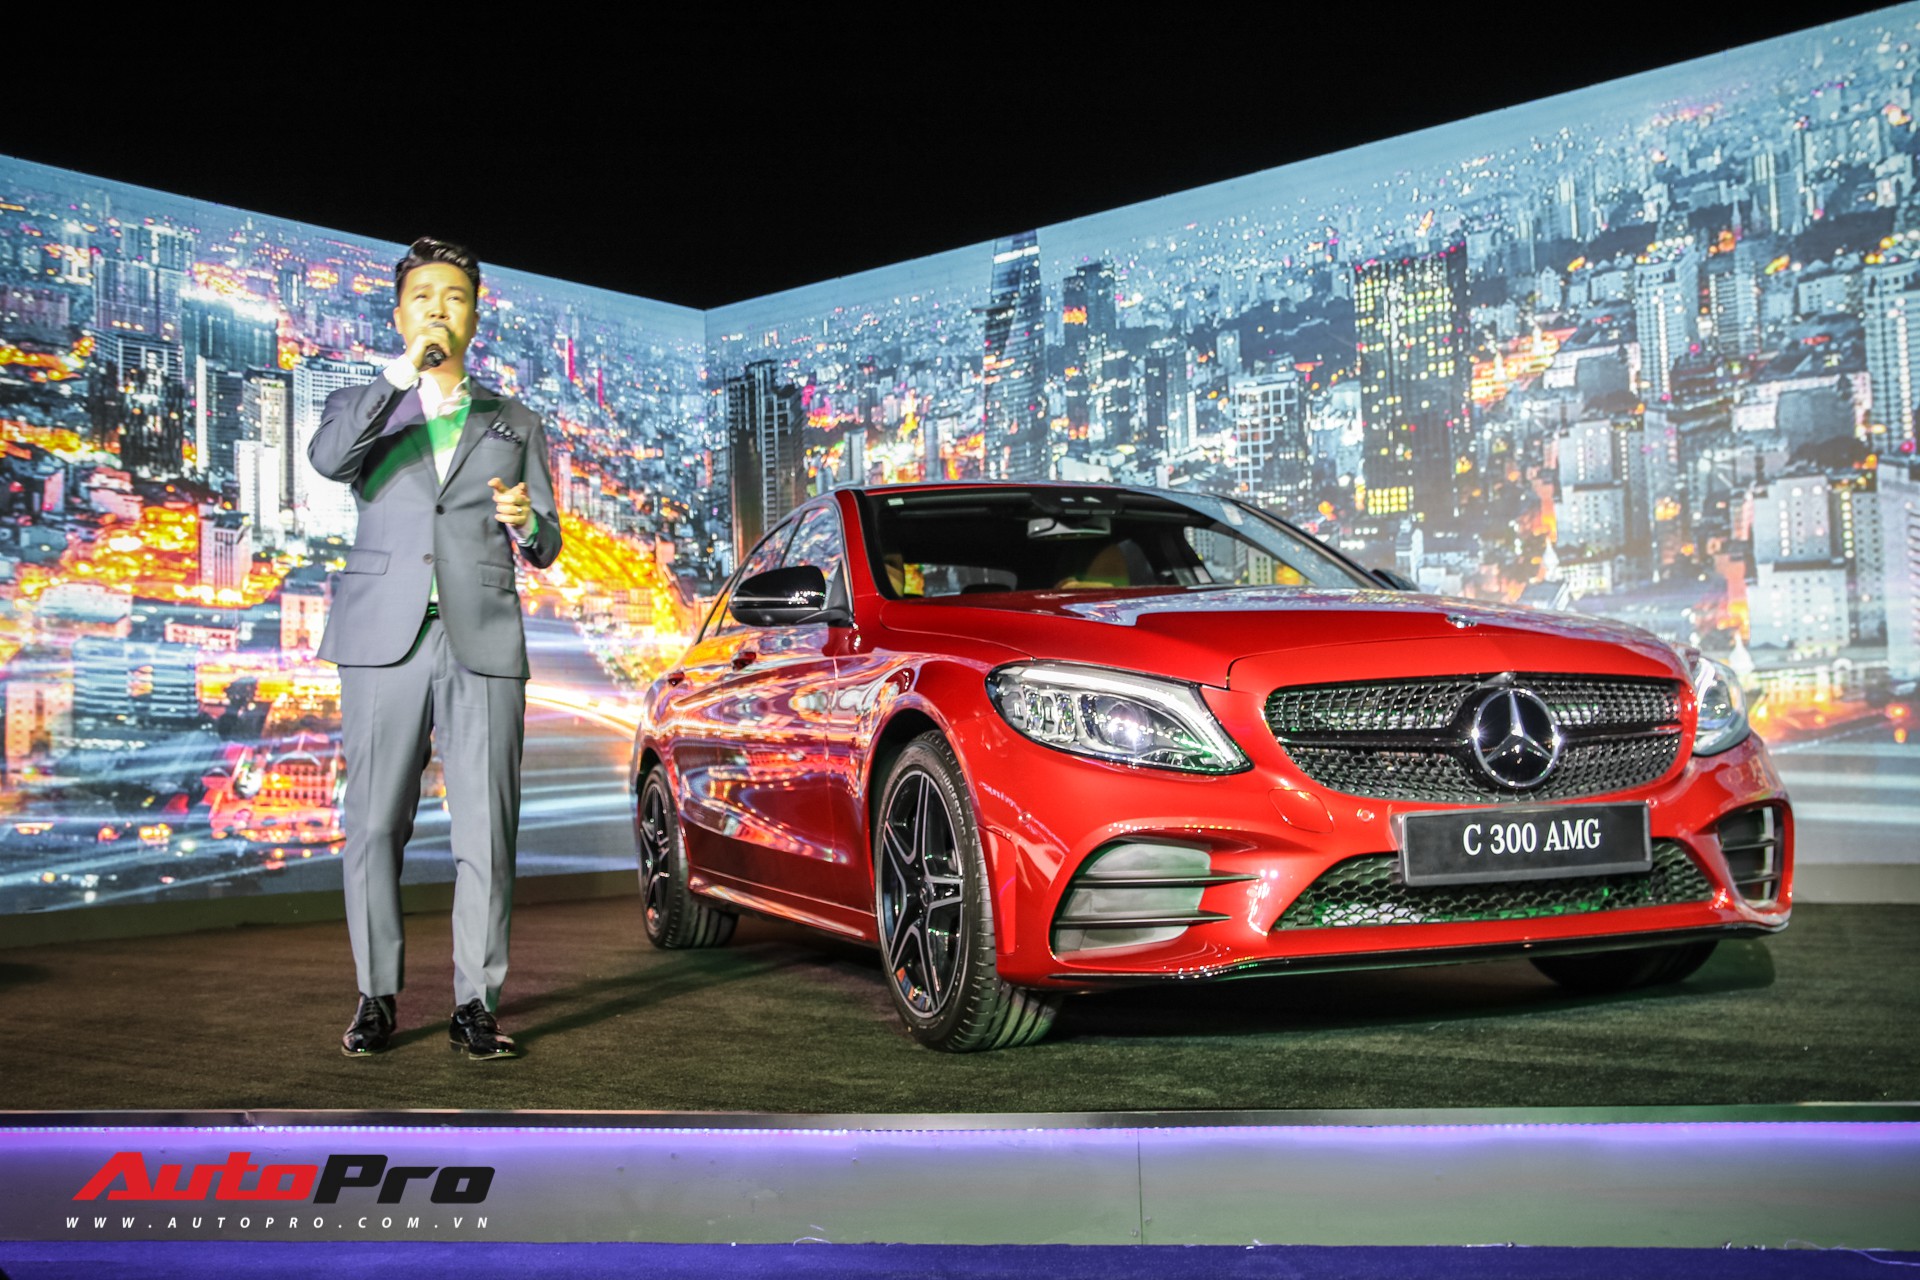 Lê Hiếu hát tại lễ ra mắt Mercedes-Benz C-Class 2019